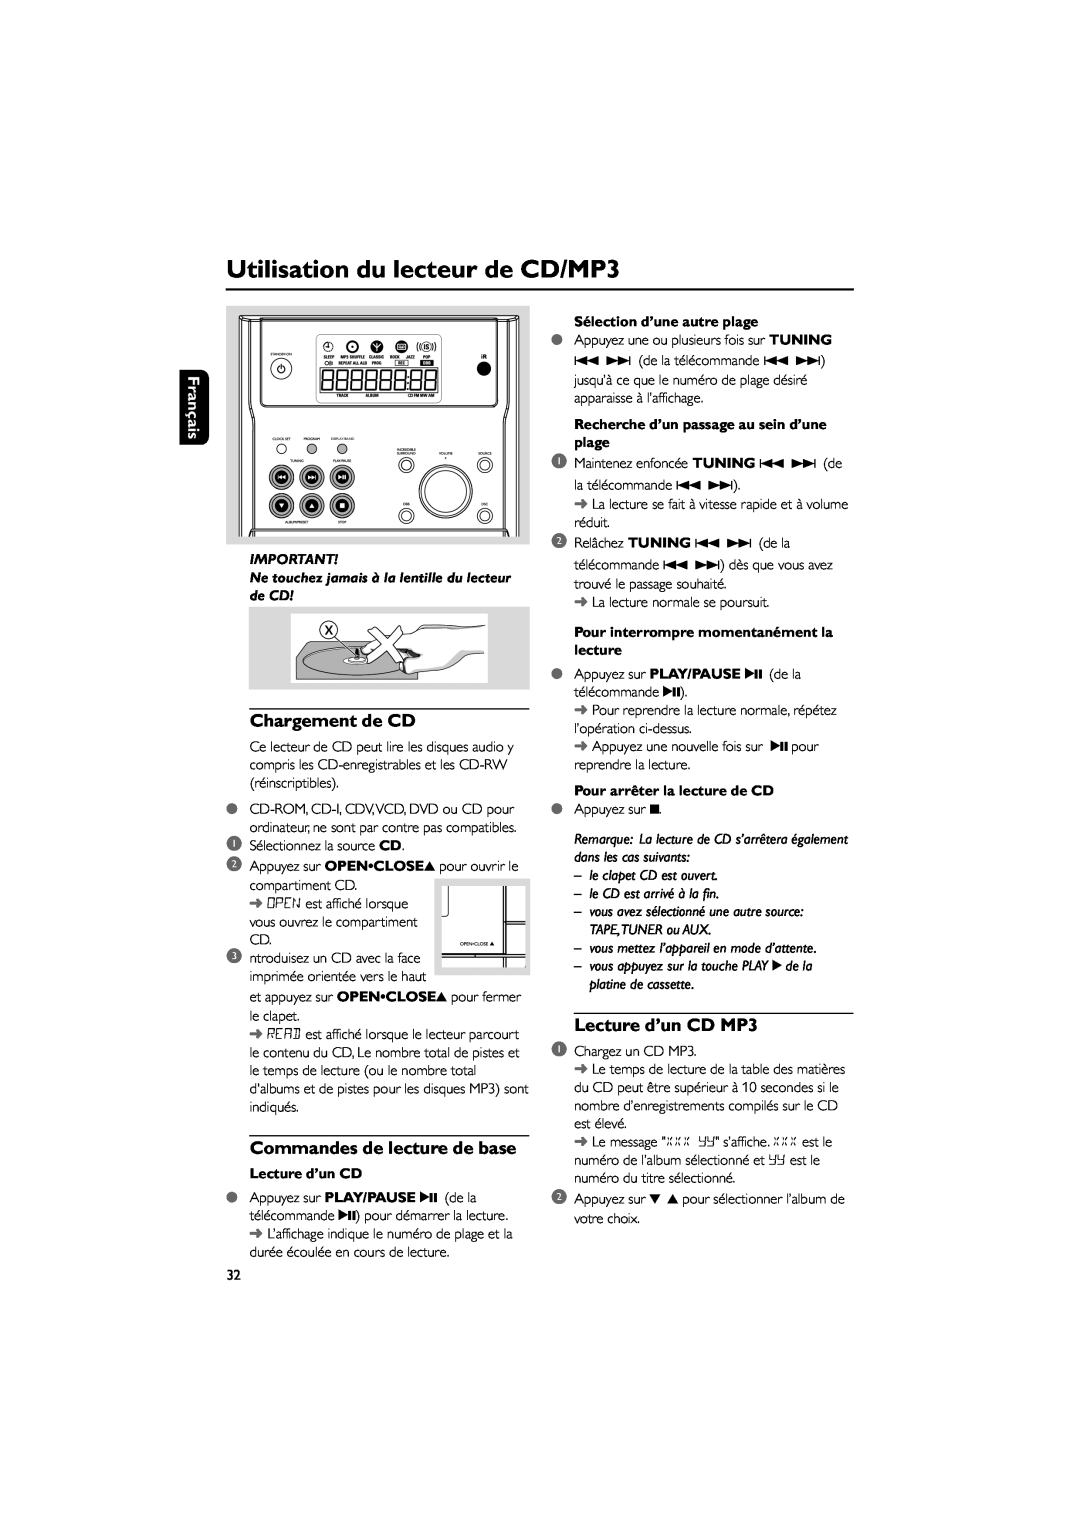 Philips MCM195 Utilisation du lecteur de CD/MP3, Chargement de CD, Commandes de lecture de base, Lecture d’un CD MP3 